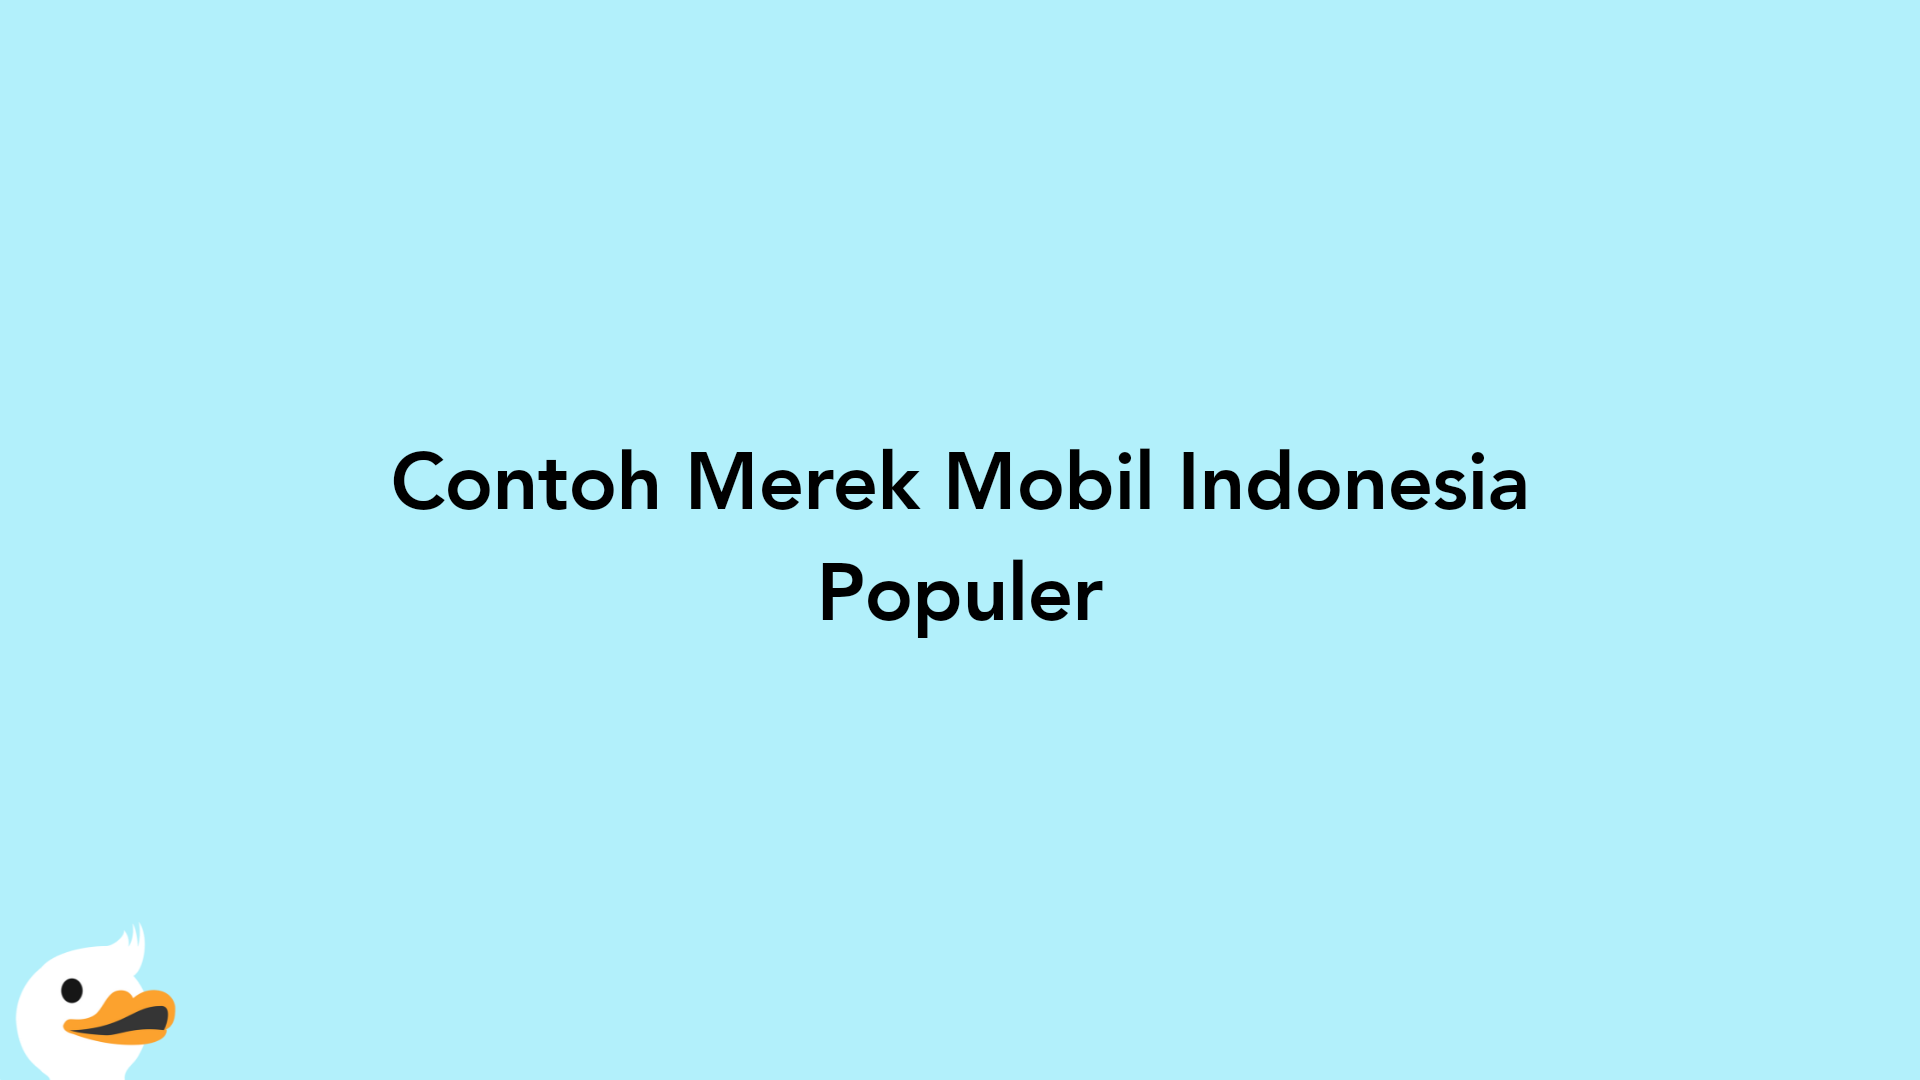 Contoh Merek Mobil Indonesia Populer